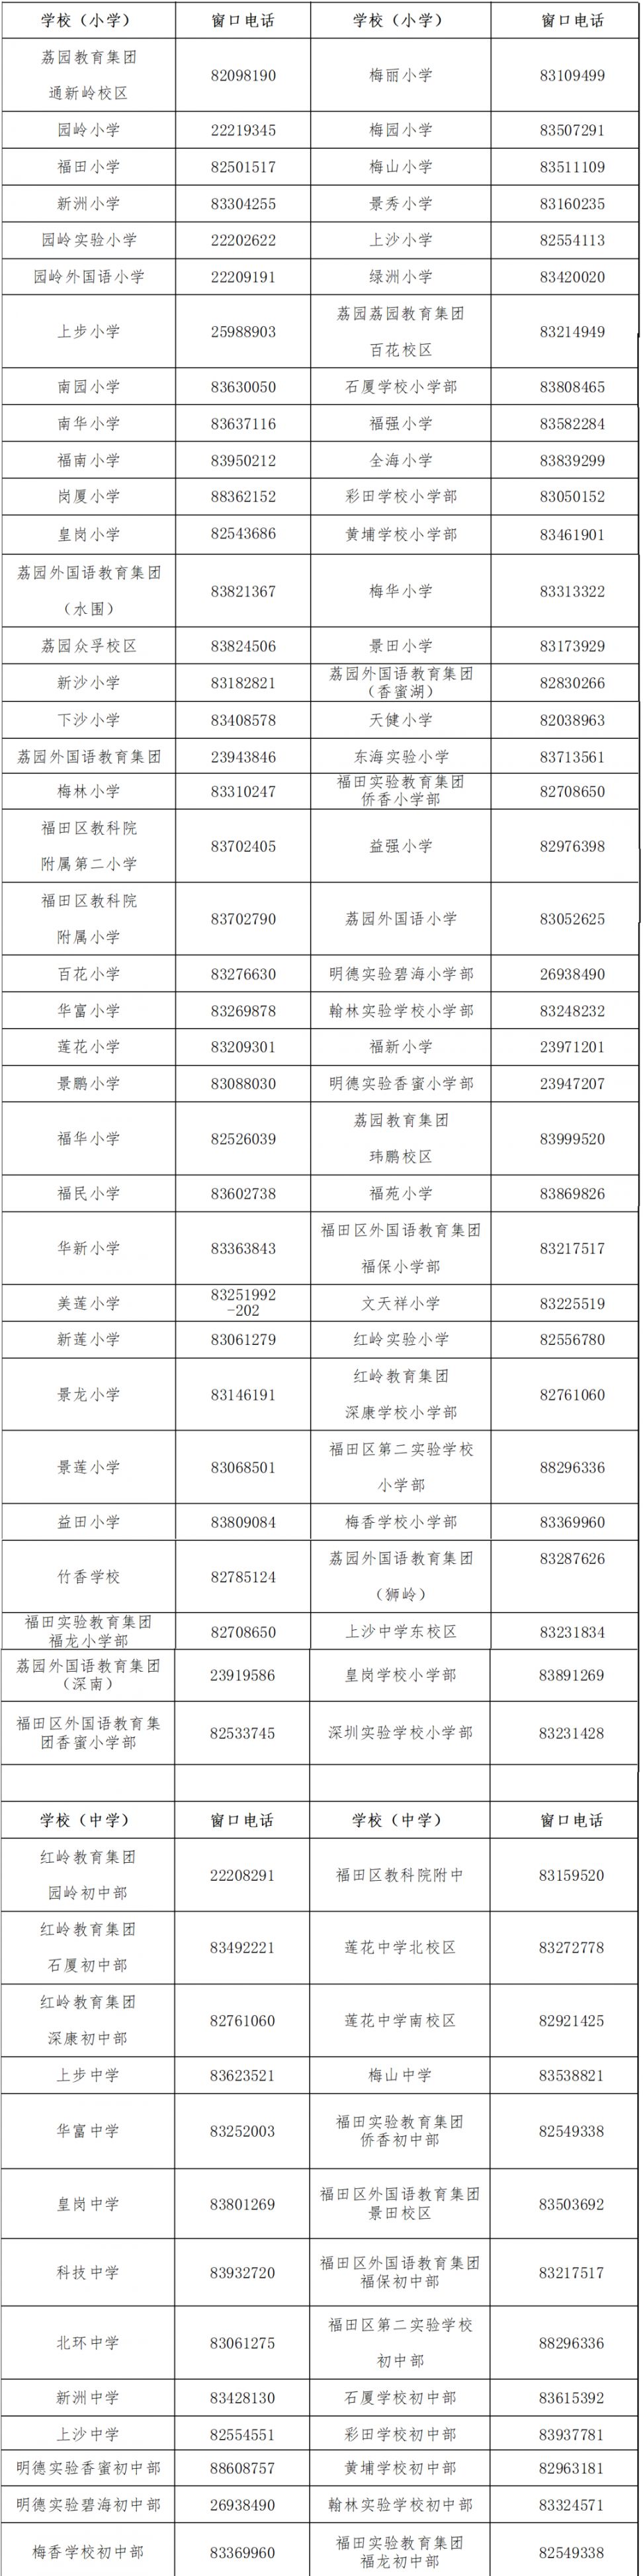 福田区义务教育阶段公办学校招生咨询电话一览表